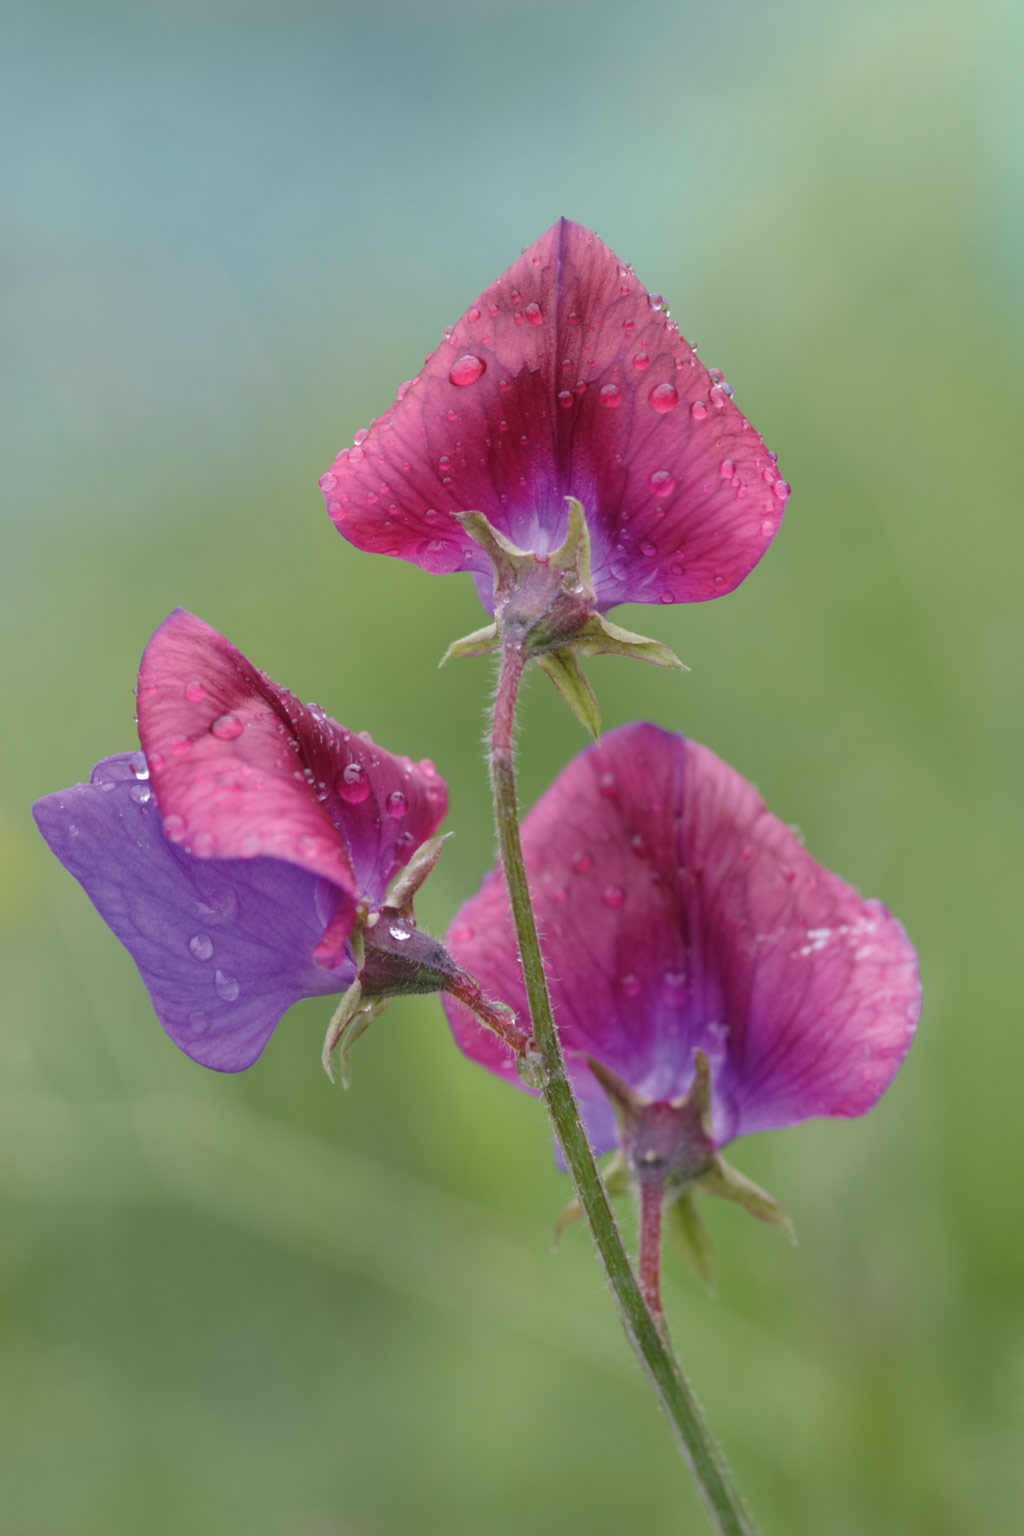 pin-sharp close-up and macro shots - close-up colour of petals